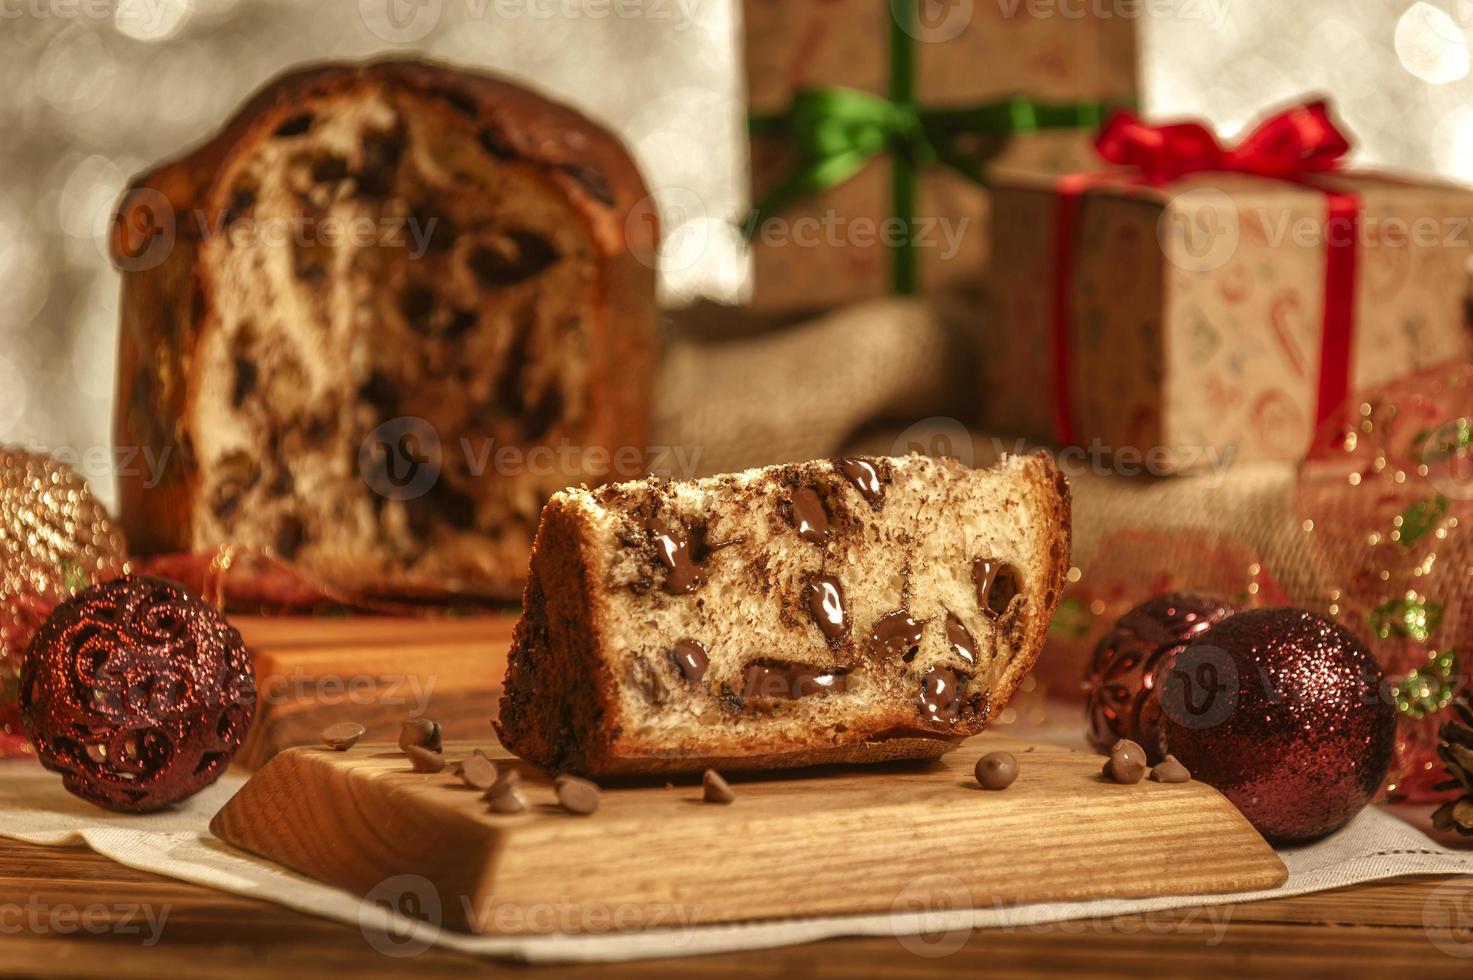 Scheibe Schokoladenpanettone auf Holzbrett mit Weihnachtsschmuck foto